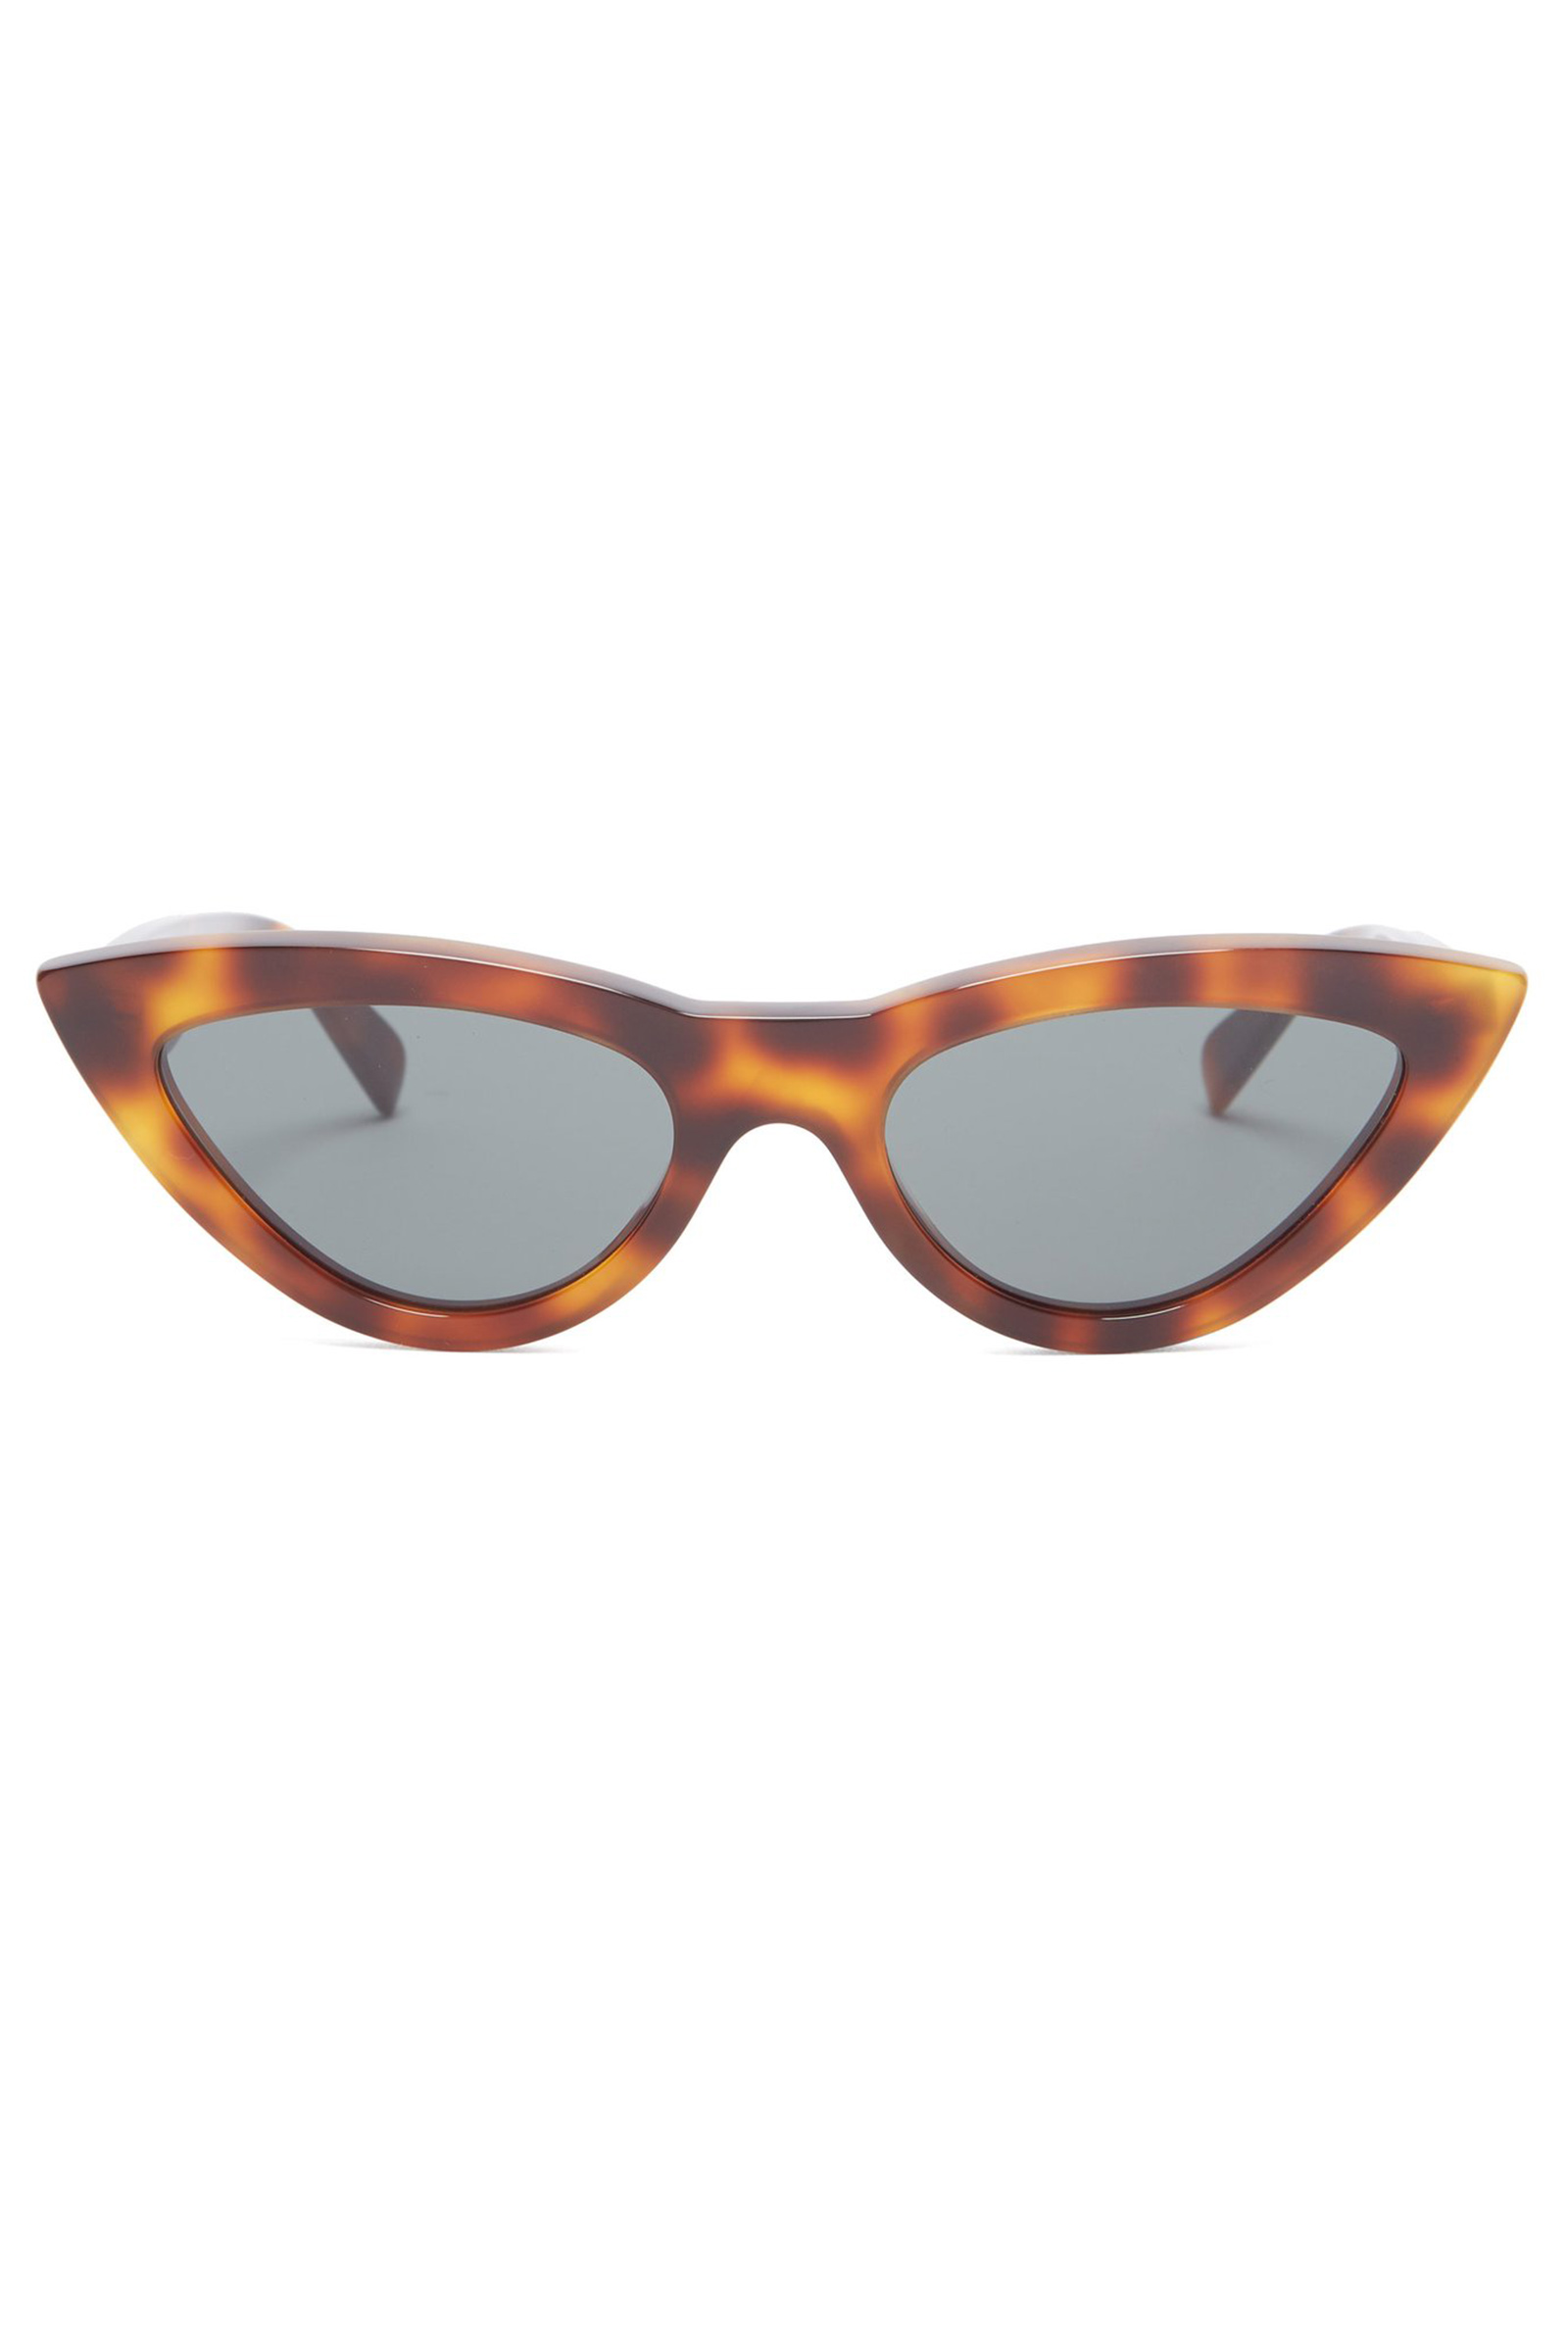 The Wick - Objects Cat-eye tortoiseshell acetate sunglasses by Celine Eyewear